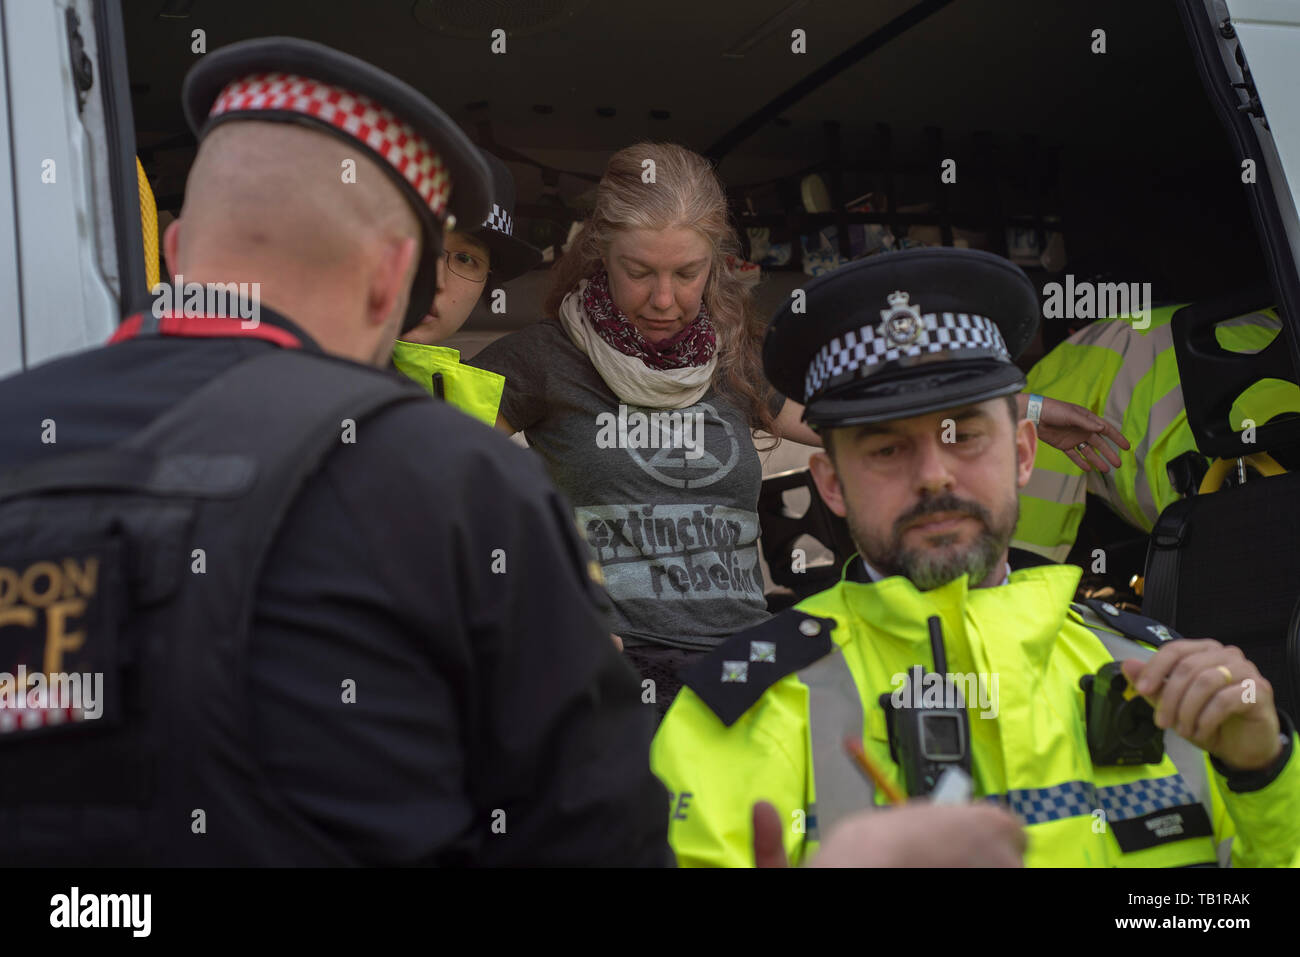 Dame/Frau extinctiion Rebellion Demonstrant, verhaftet und in einen Polizeiwagen, London gesucht, Klima Demonstrant Stockfoto